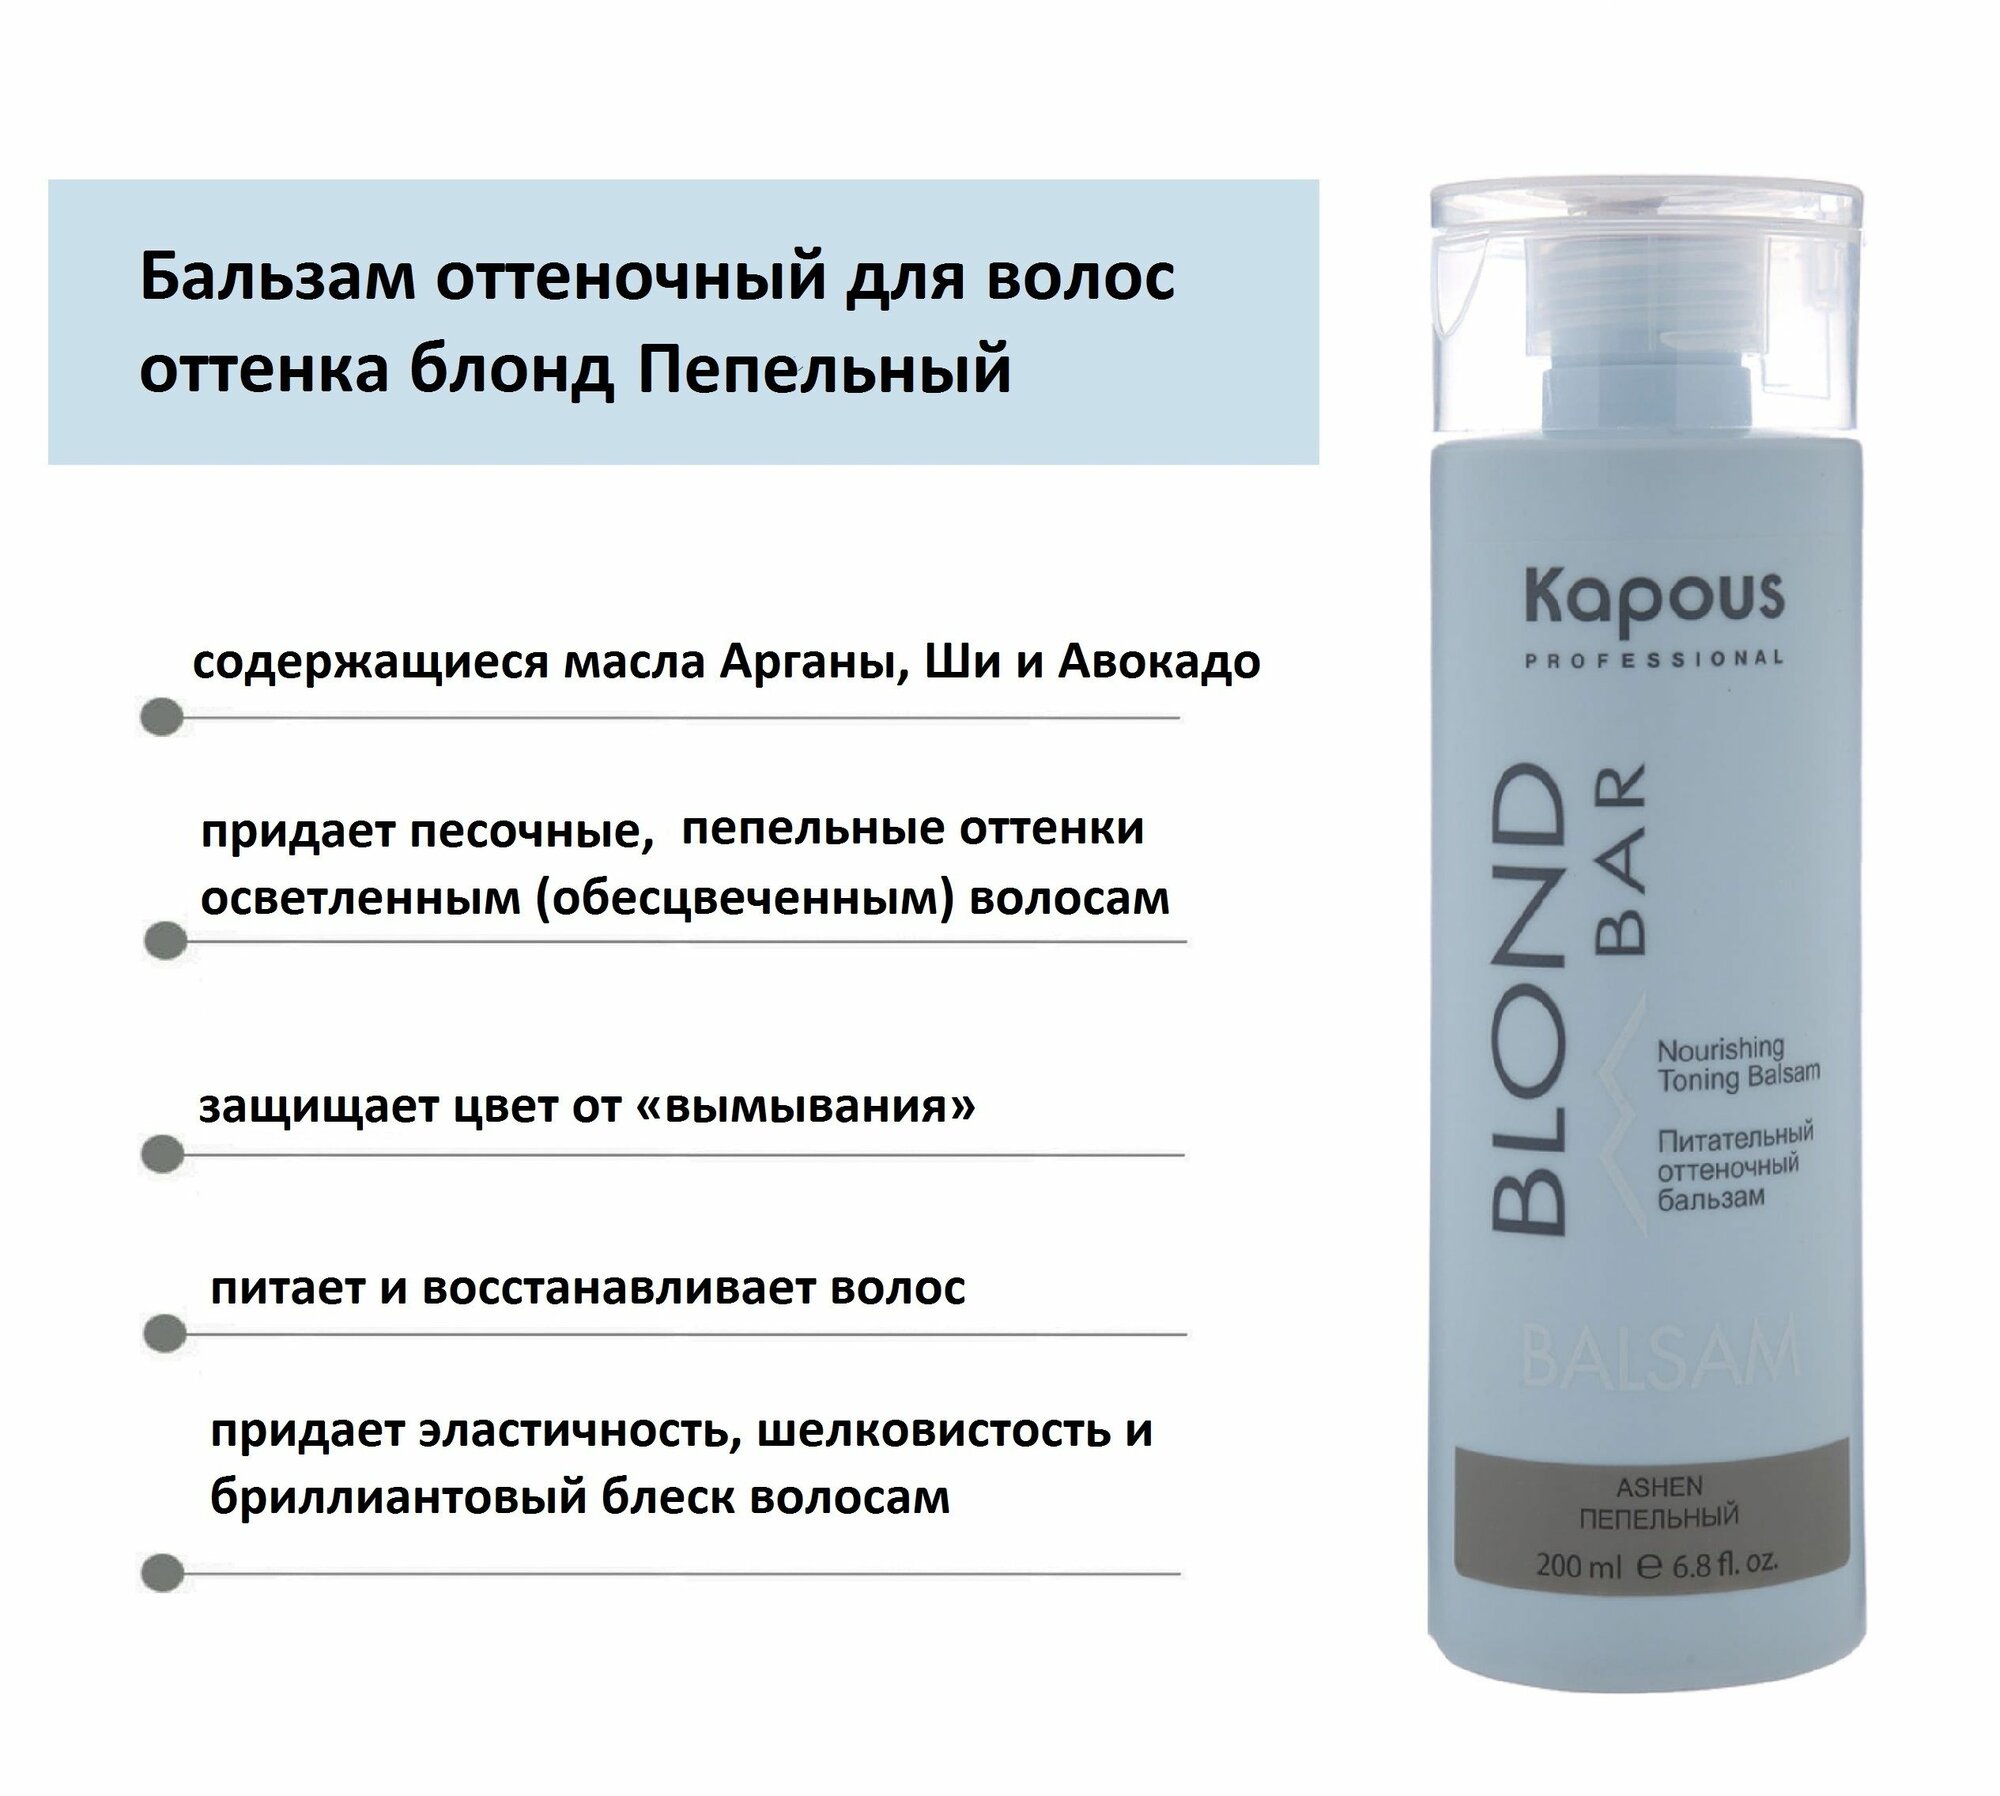 Kapous Professional Питательный оттеночный бальзам для оттенков блонд Пепельный 200 мл (Kapous Professional, ) - фото №18